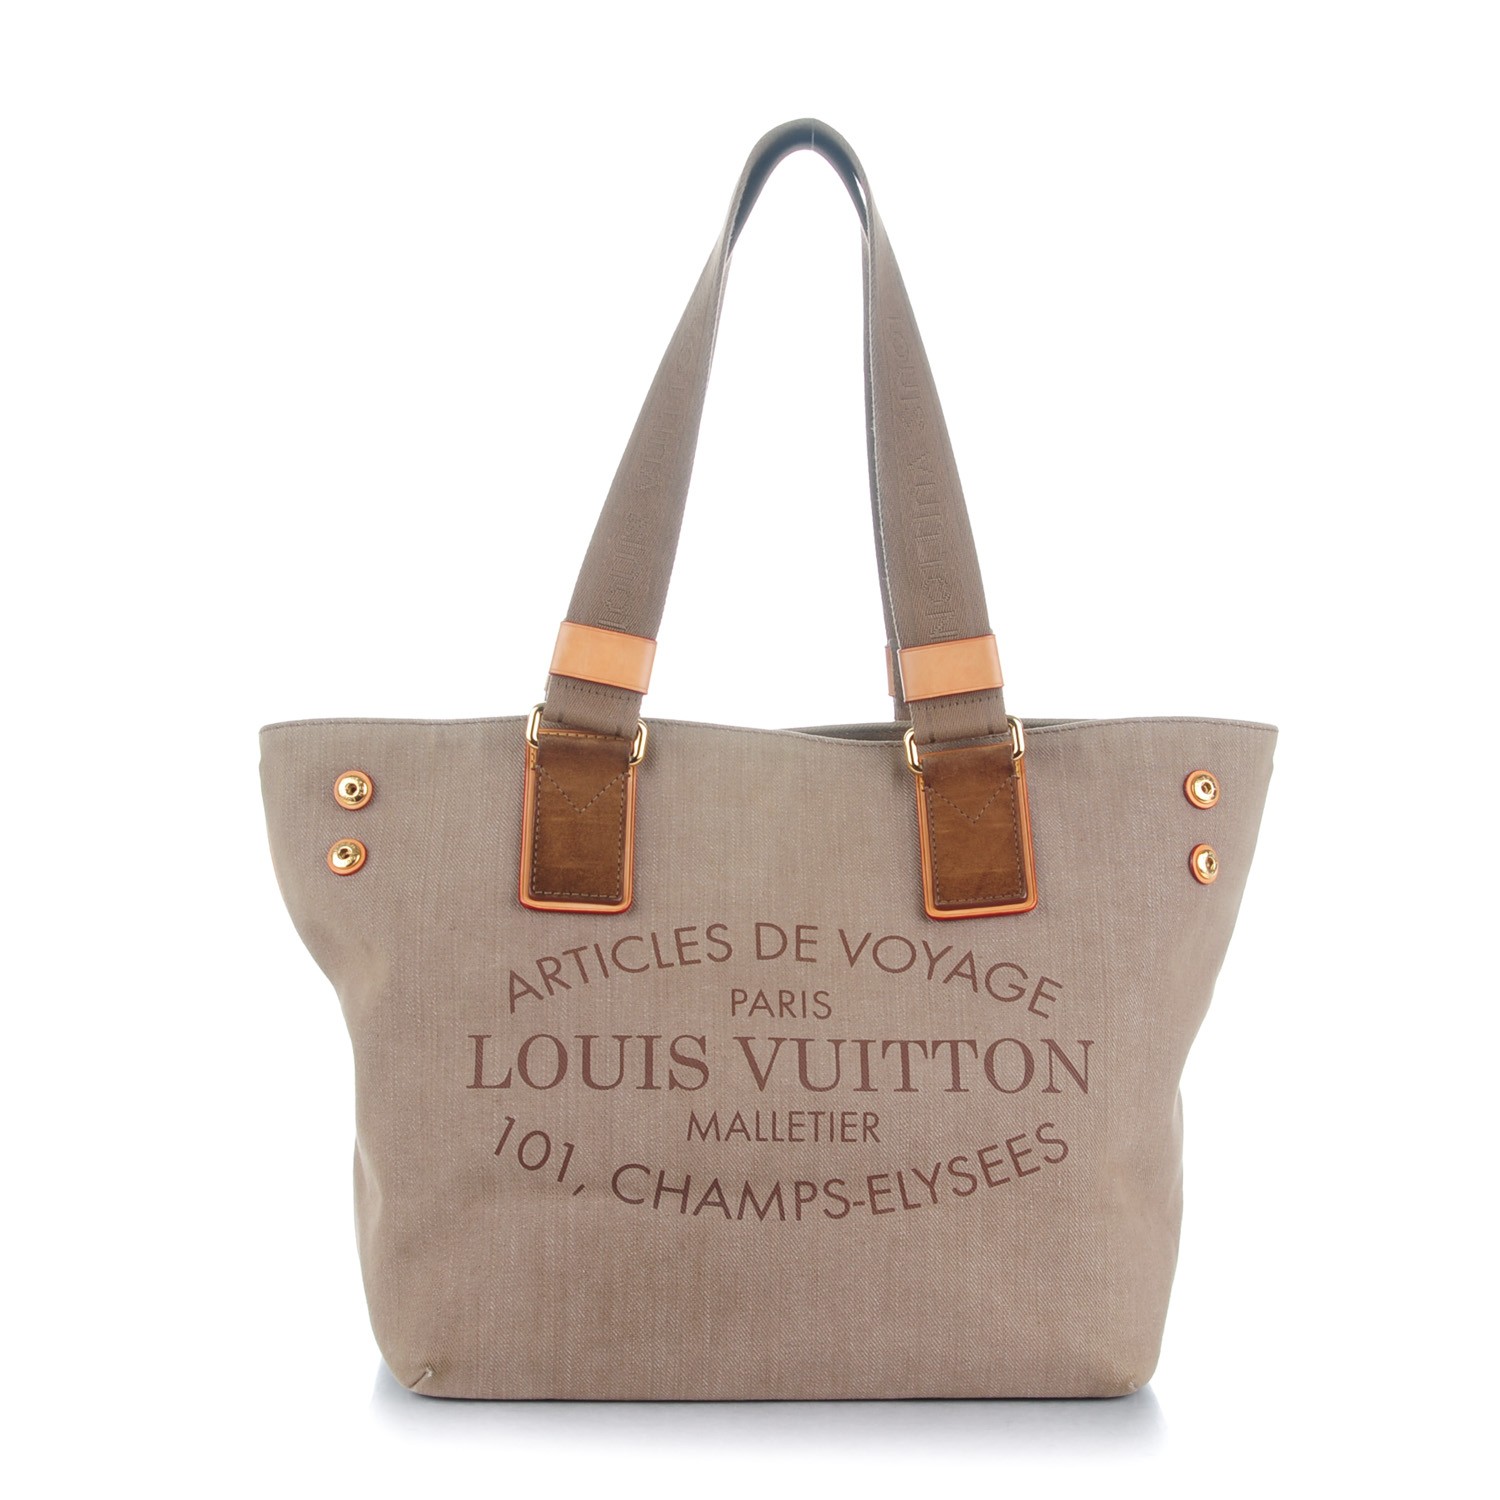 Louis Vuitton x Supreme  Achat / Vente d'articles de Luxe d'occasion -  Vestiaire Collective